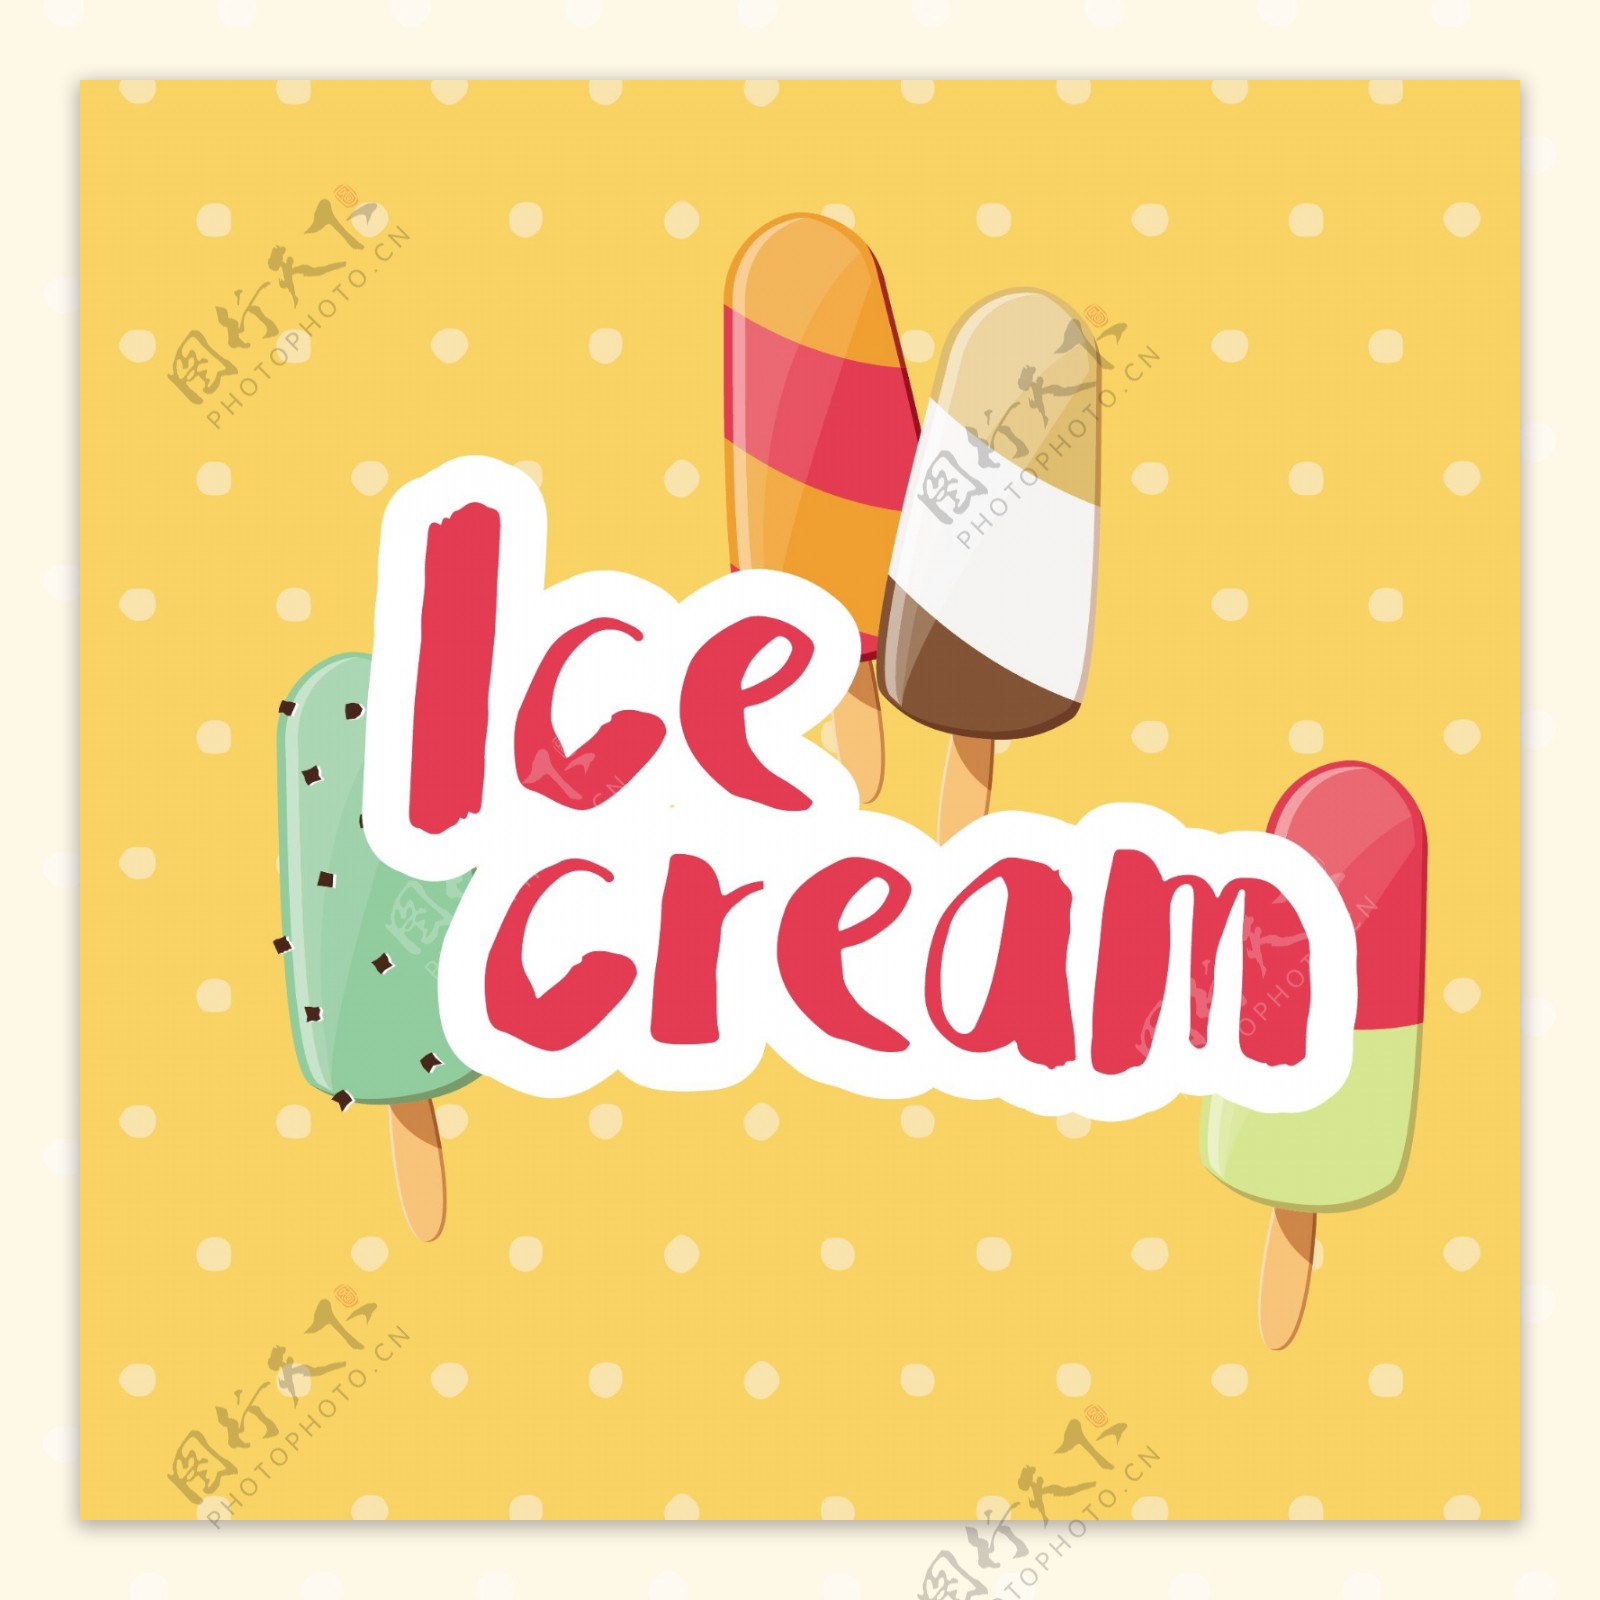 彩色冰淇淋背景